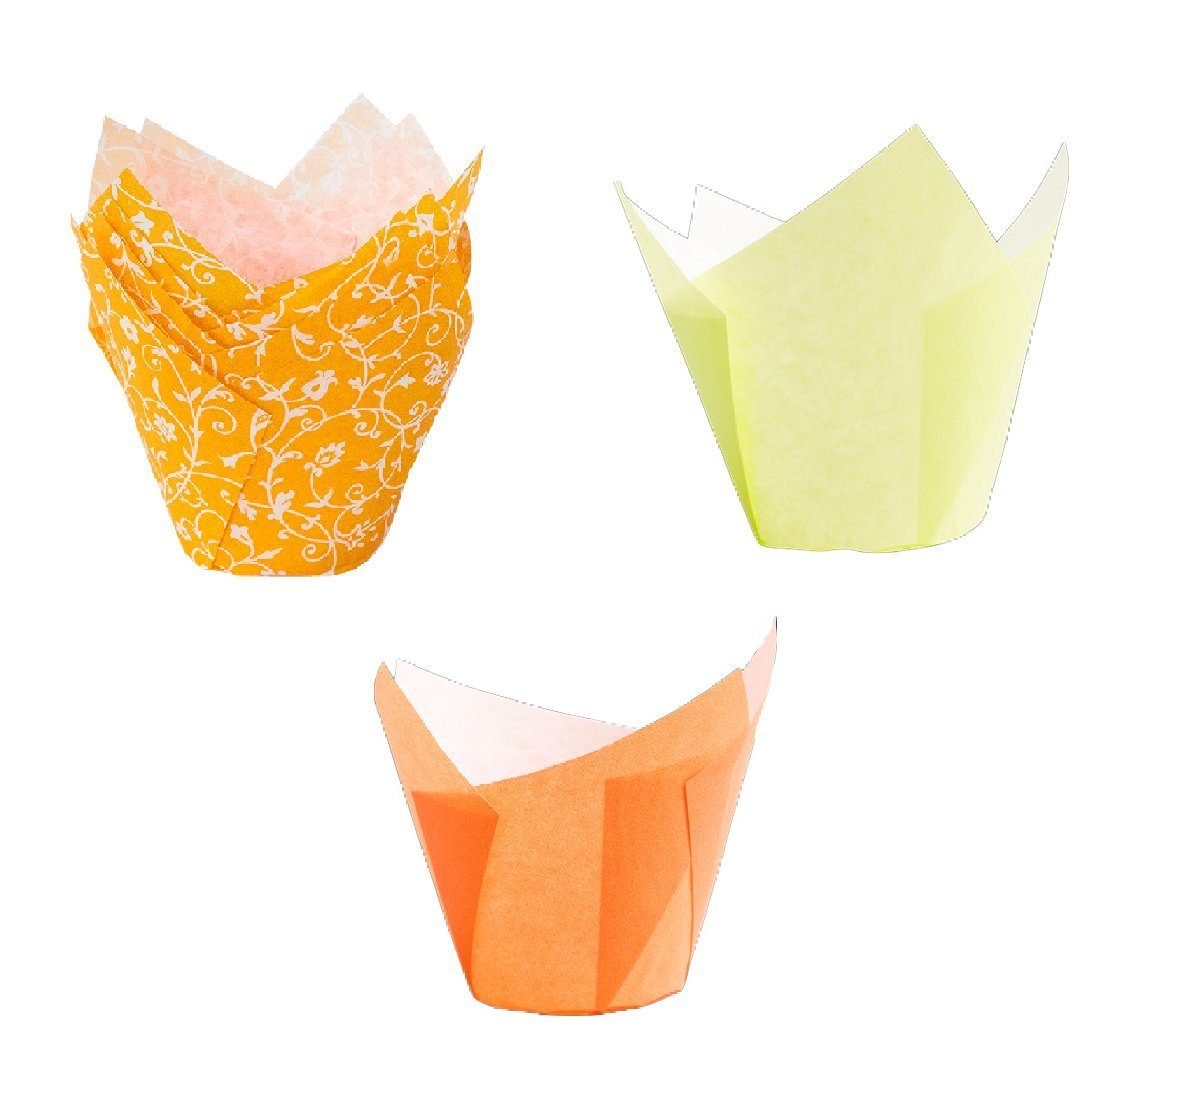 Demmler Muffinform Tulip-Wrap Set Gelb/Orange - Tulpenförmige Muffinförmchen -, zum stilvollen Anrichten von Muffins und Cupcakes - Made in Germany | Muffinformen